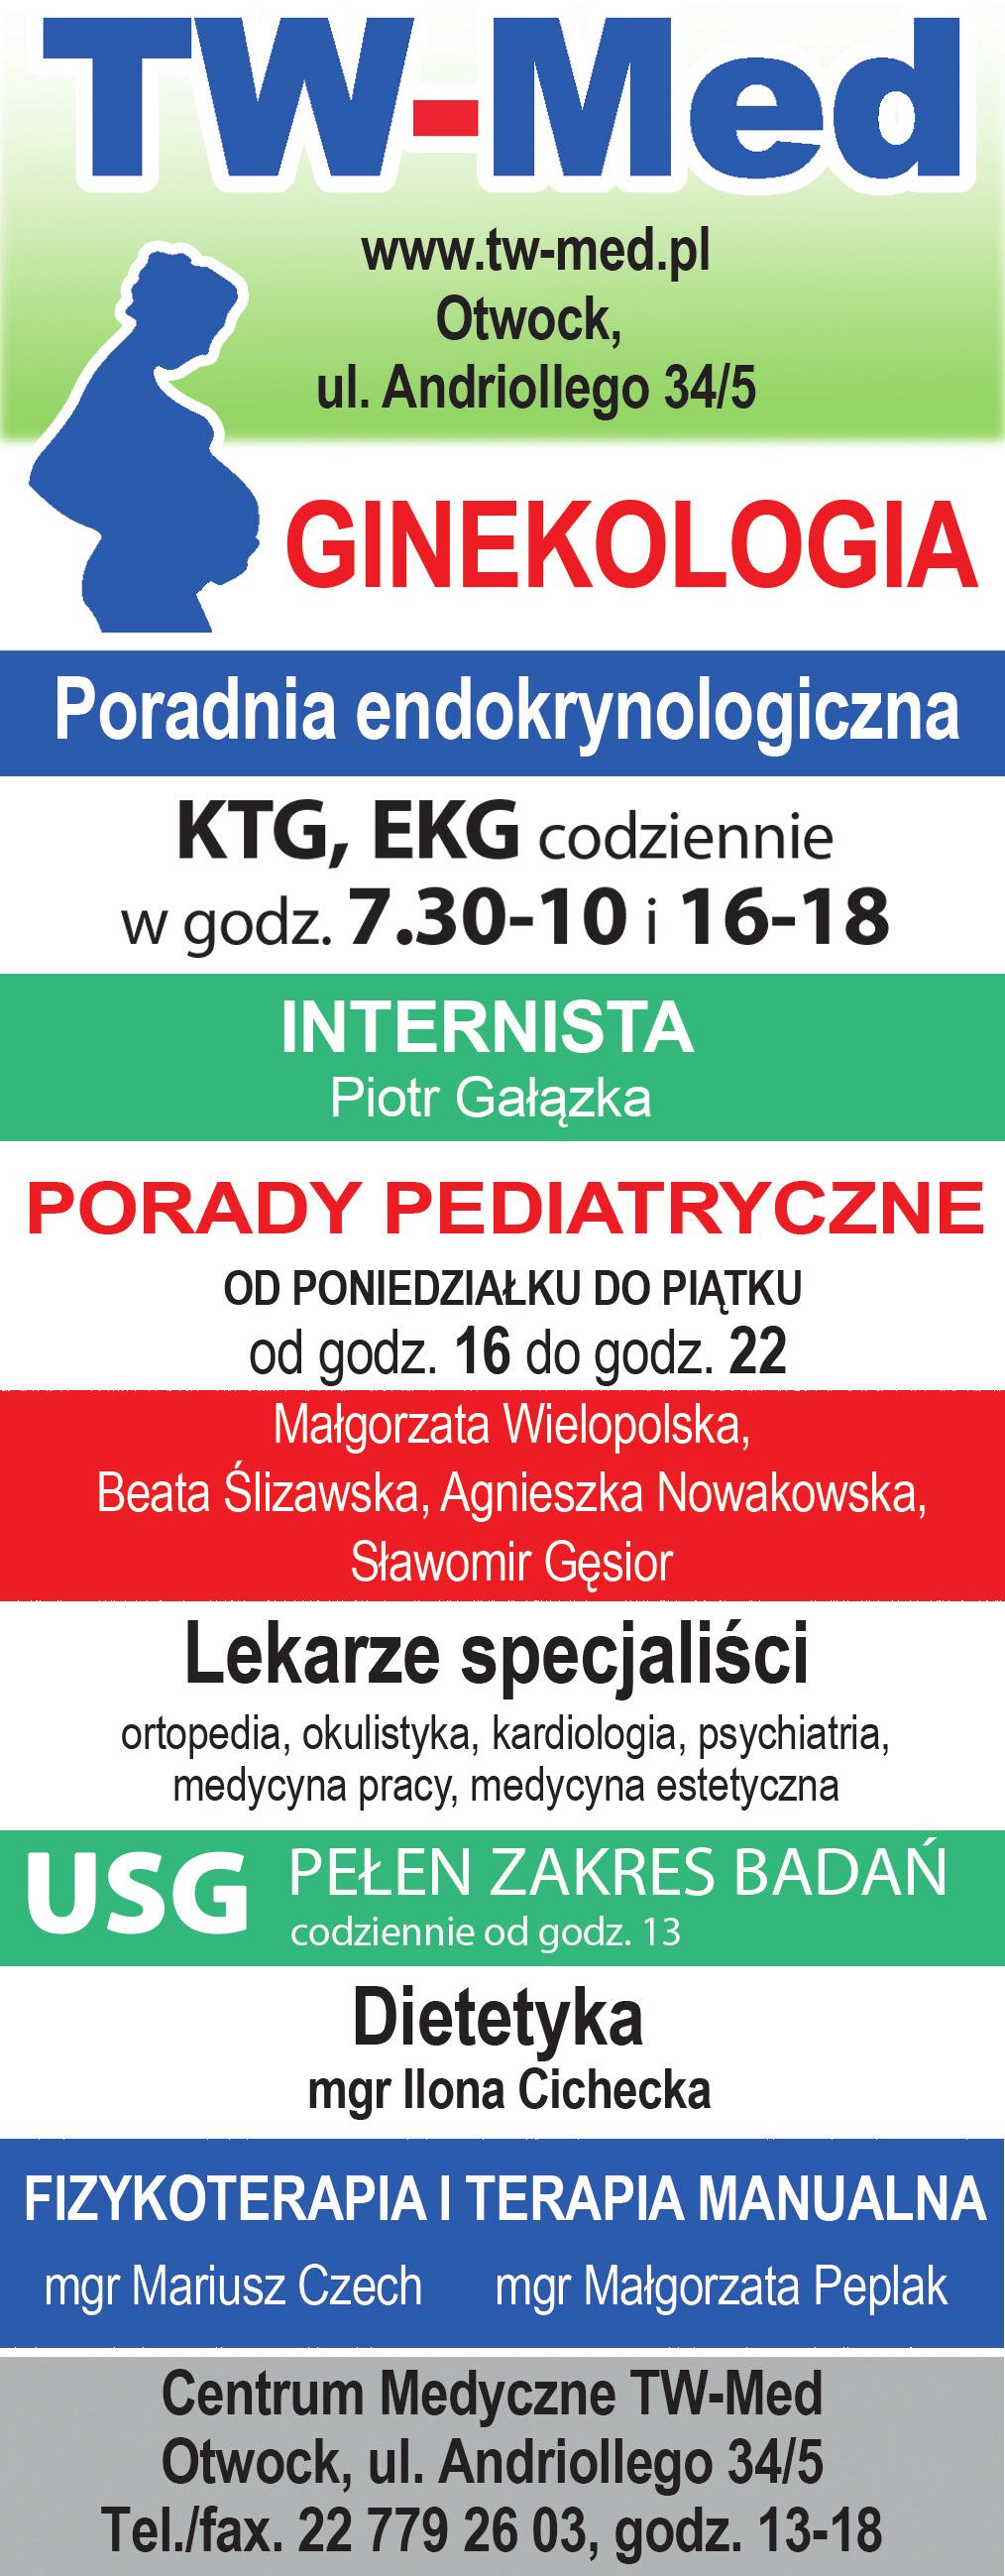 ogłoszenia drobne 45 linia otwocka 8-14 maja 2017 gabinet okulistyczny SPECJALISTYCZNE CENTRUM REHABILITACJI www.specer.pl lek. Małgorzata gruchoła Specjalista II st. okulistyki lek.